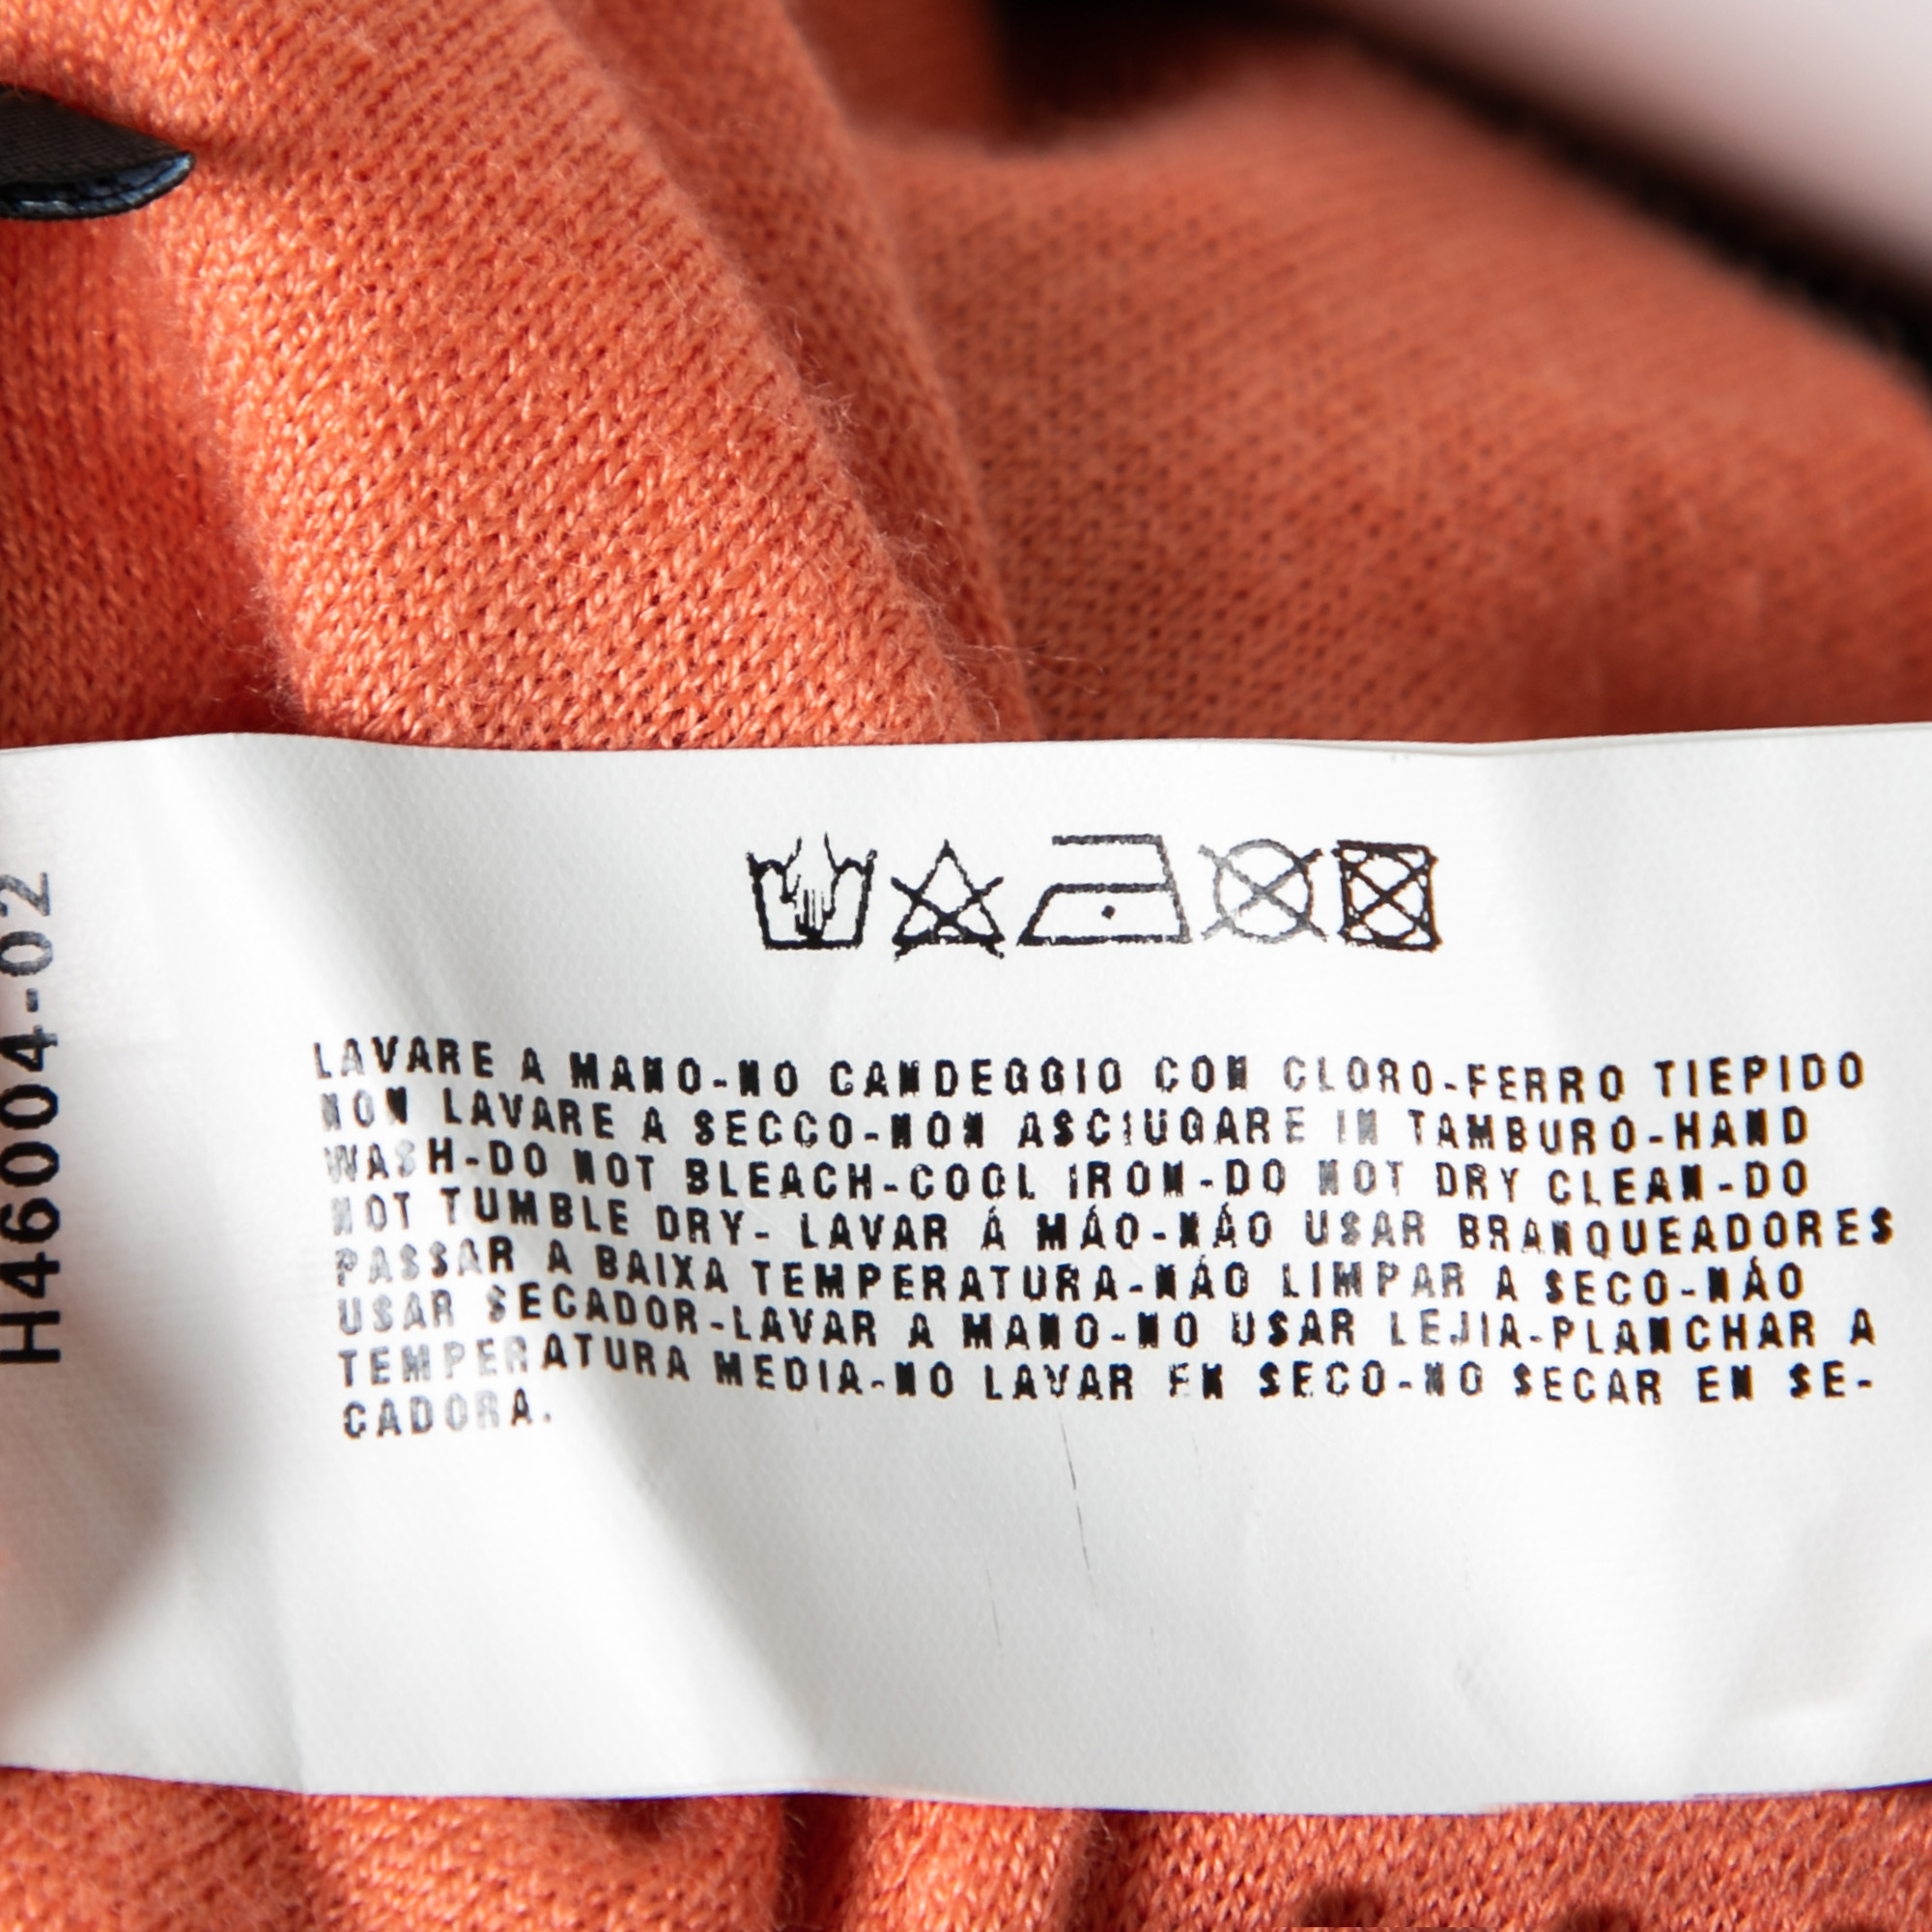 Emporio Armani Orange Beaded Detail Sleeveless Knit Top S